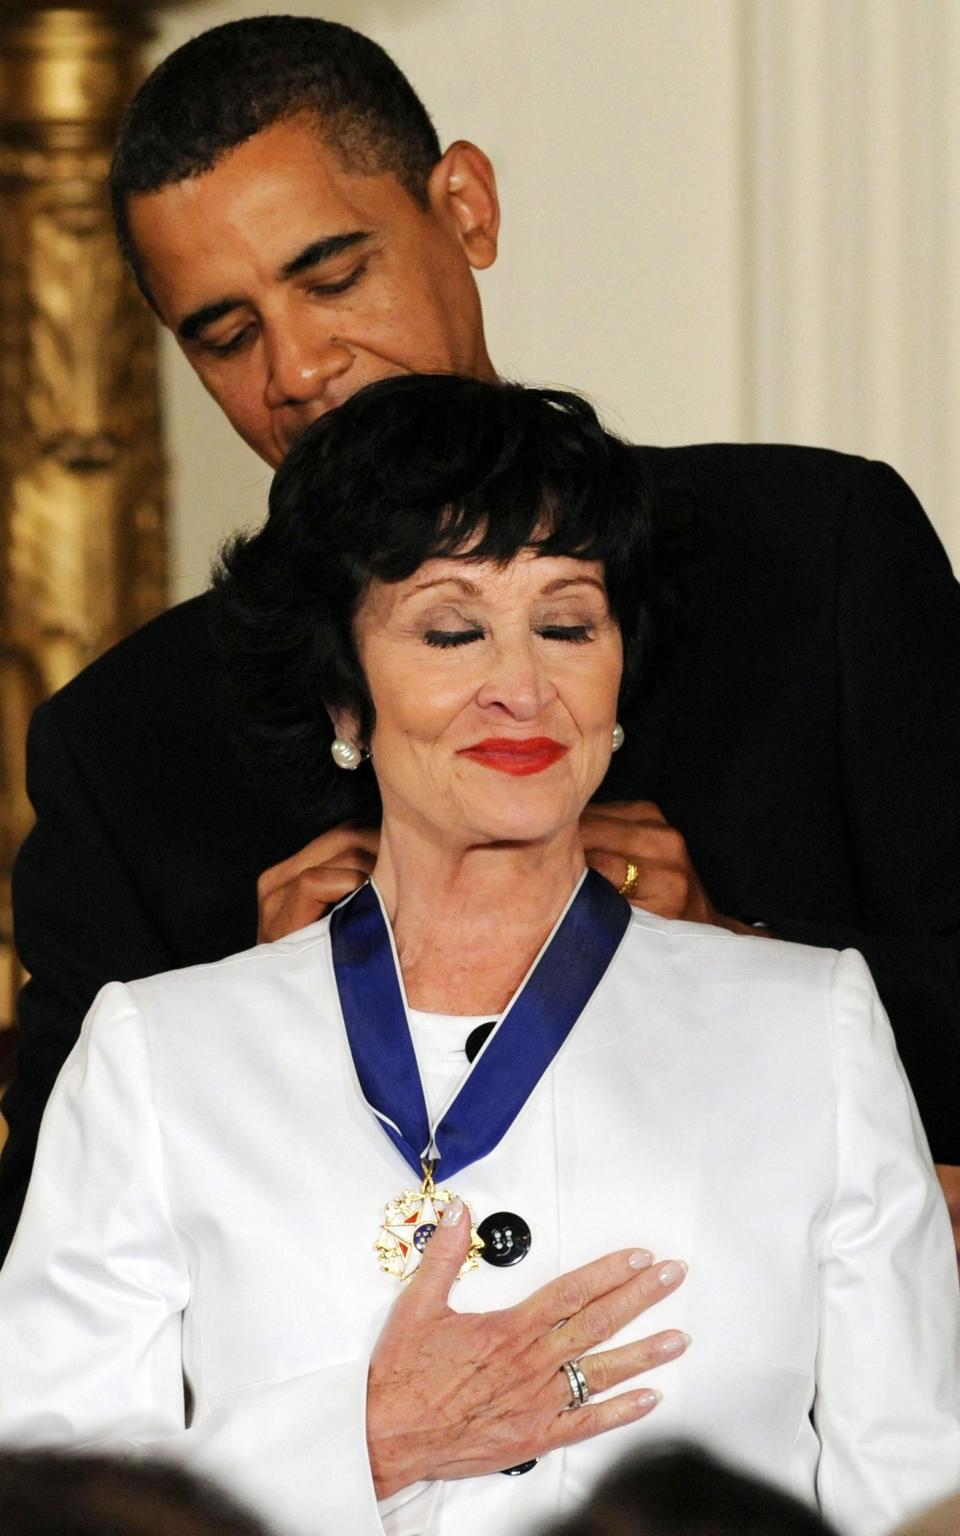 Η Τσίτα Ριβέρα λαμβάνει το Προεδρικό της Μετάλλιο Ελευθερίας από τον Μπαράκ Ομπάμα το 2009